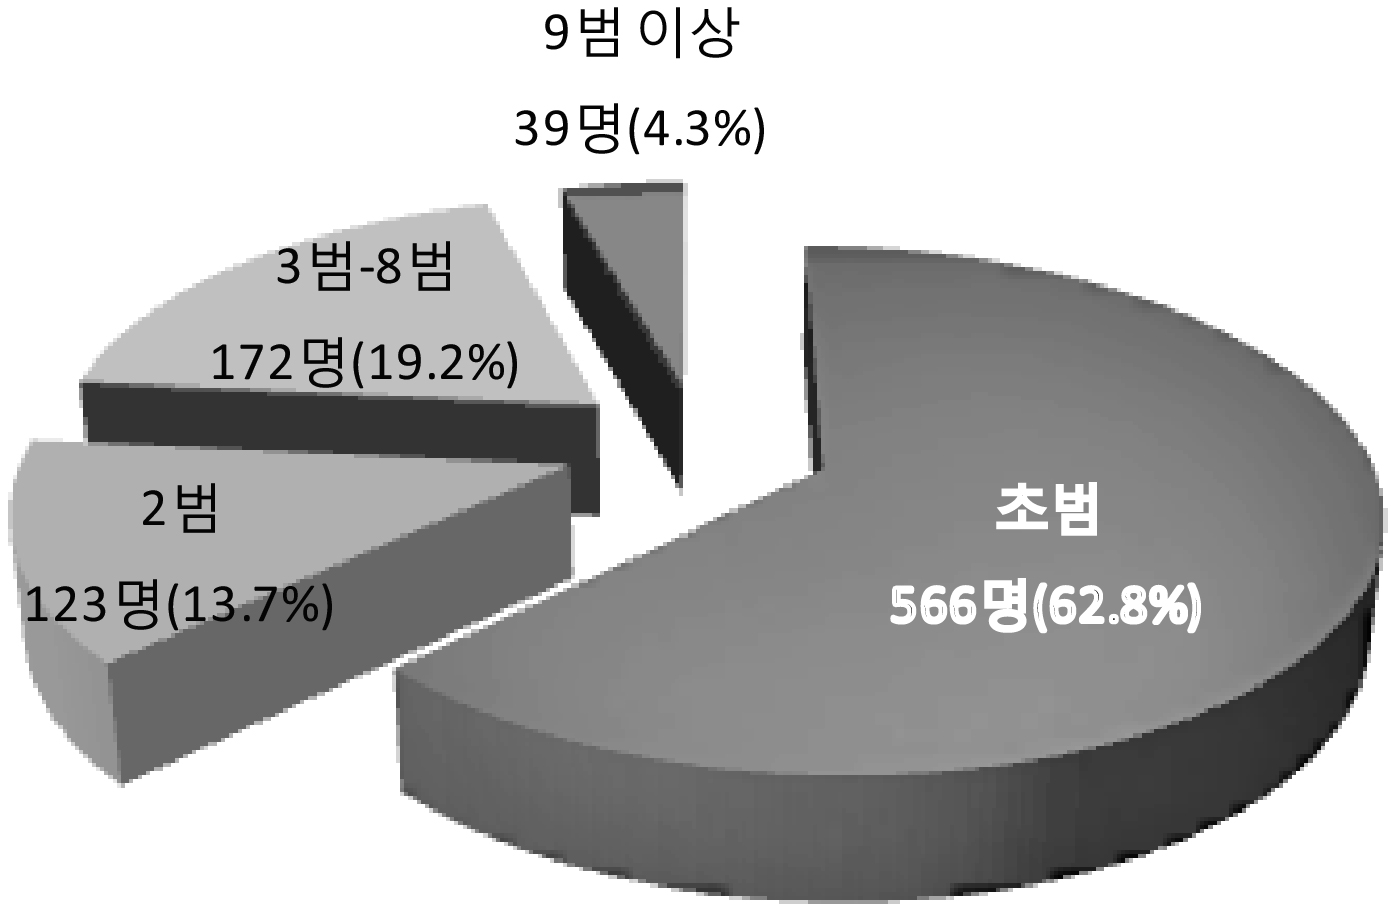 노인수형자 전과회수 현황(2012)